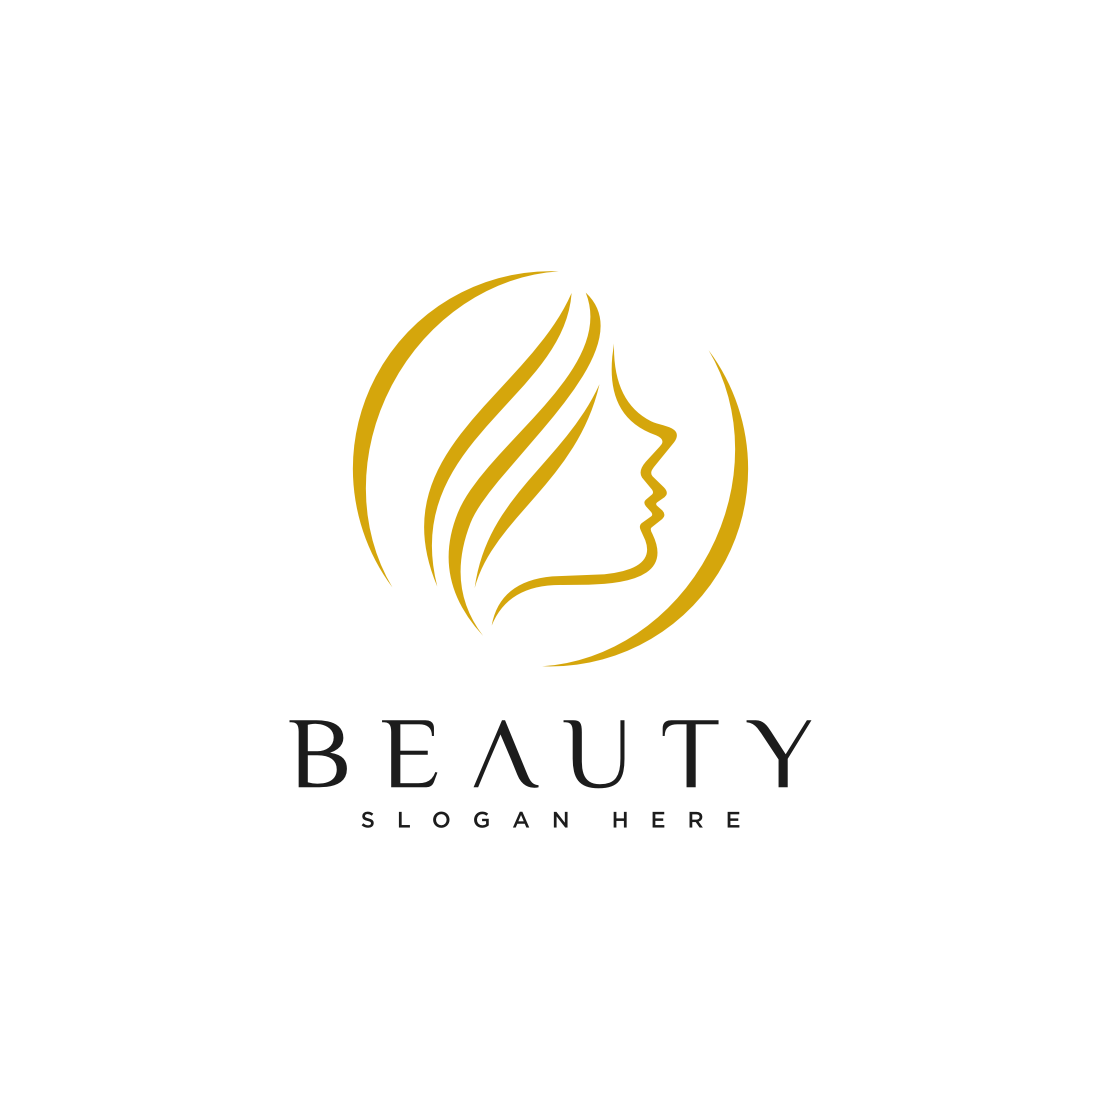 Beauty Woman Face Logo Vector Design main cover